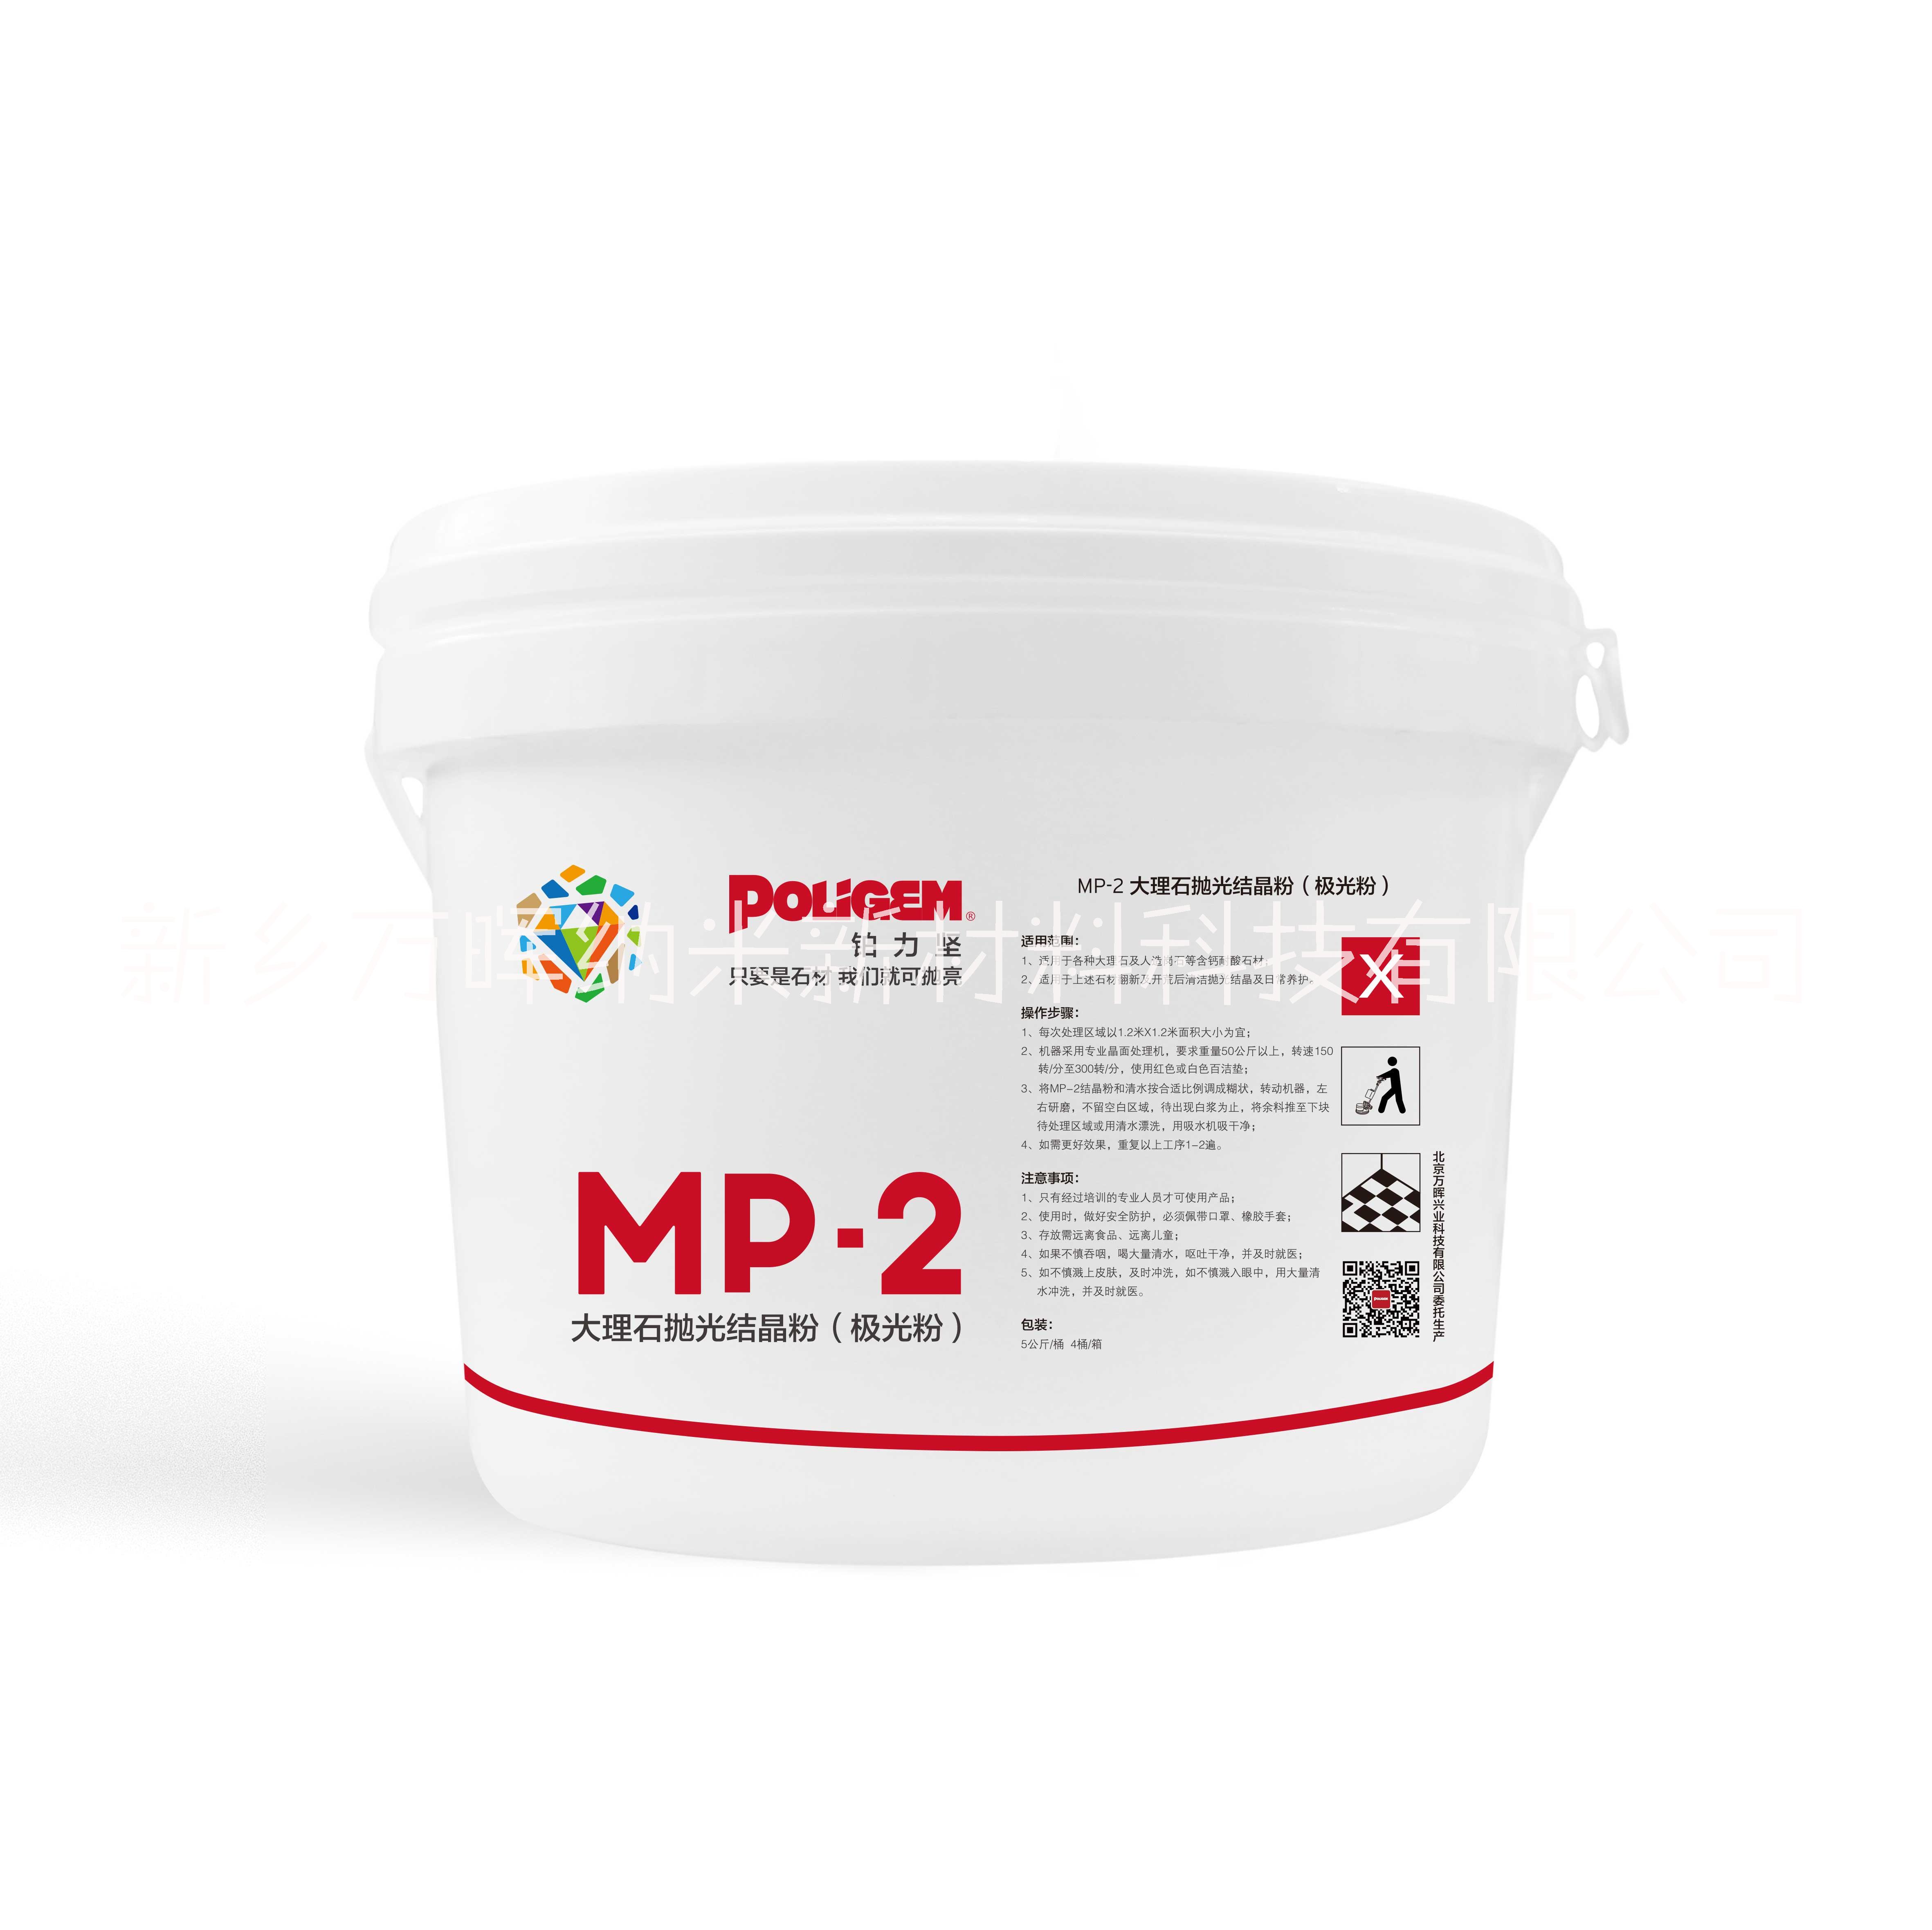 MP-2大理石抛光结晶粉极光粉图片